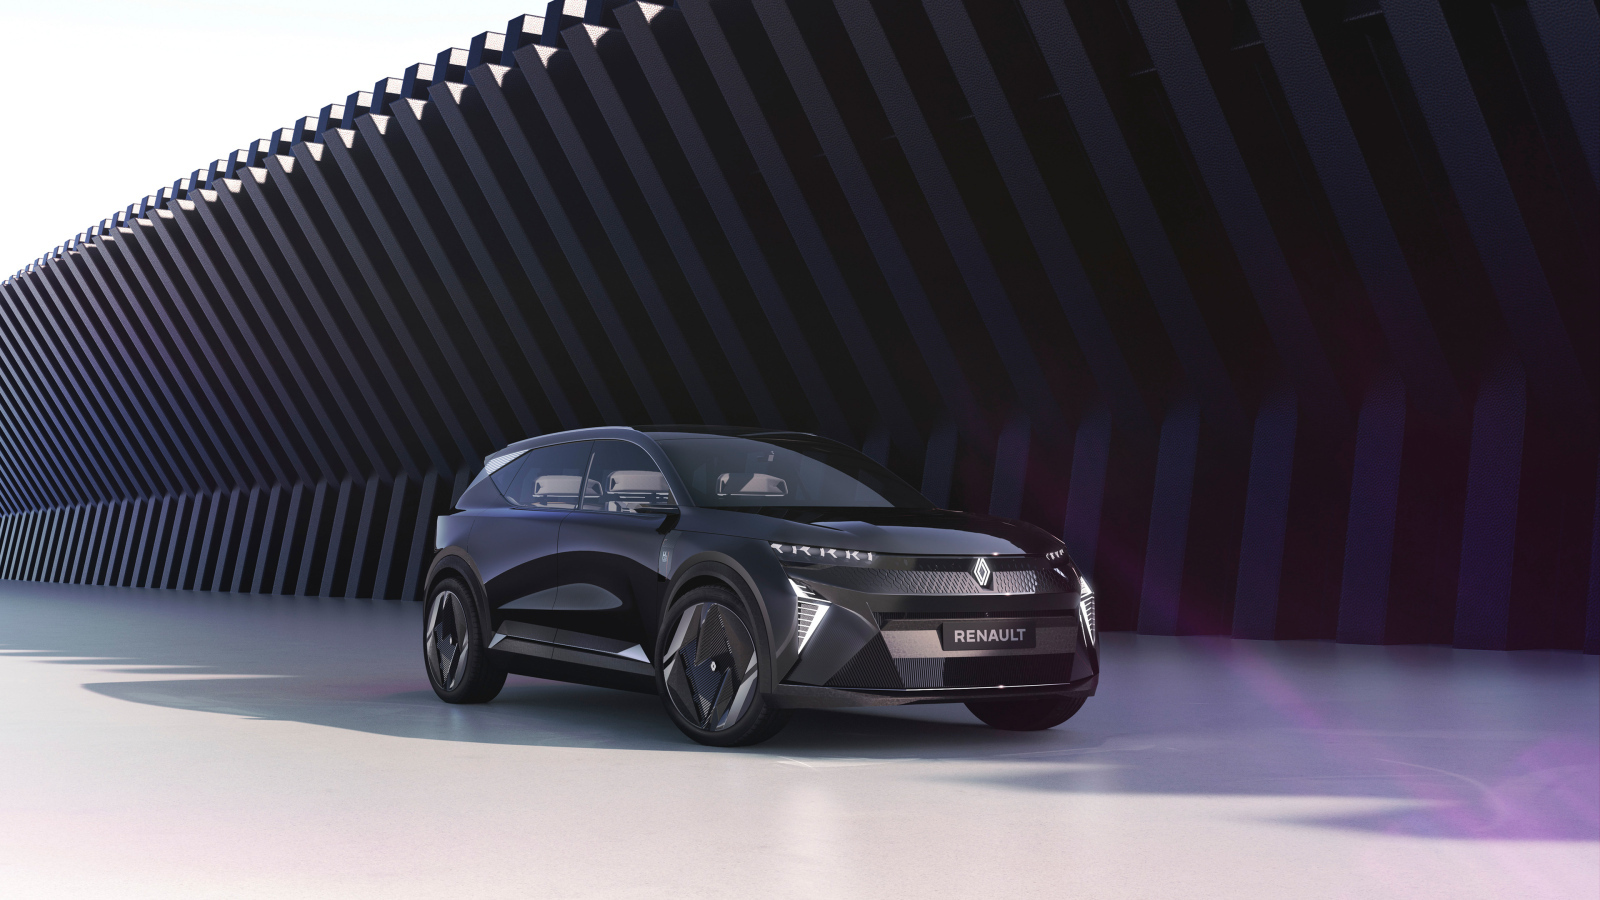 Черный автомобиль Renault Scénic Vision 2022 у стены